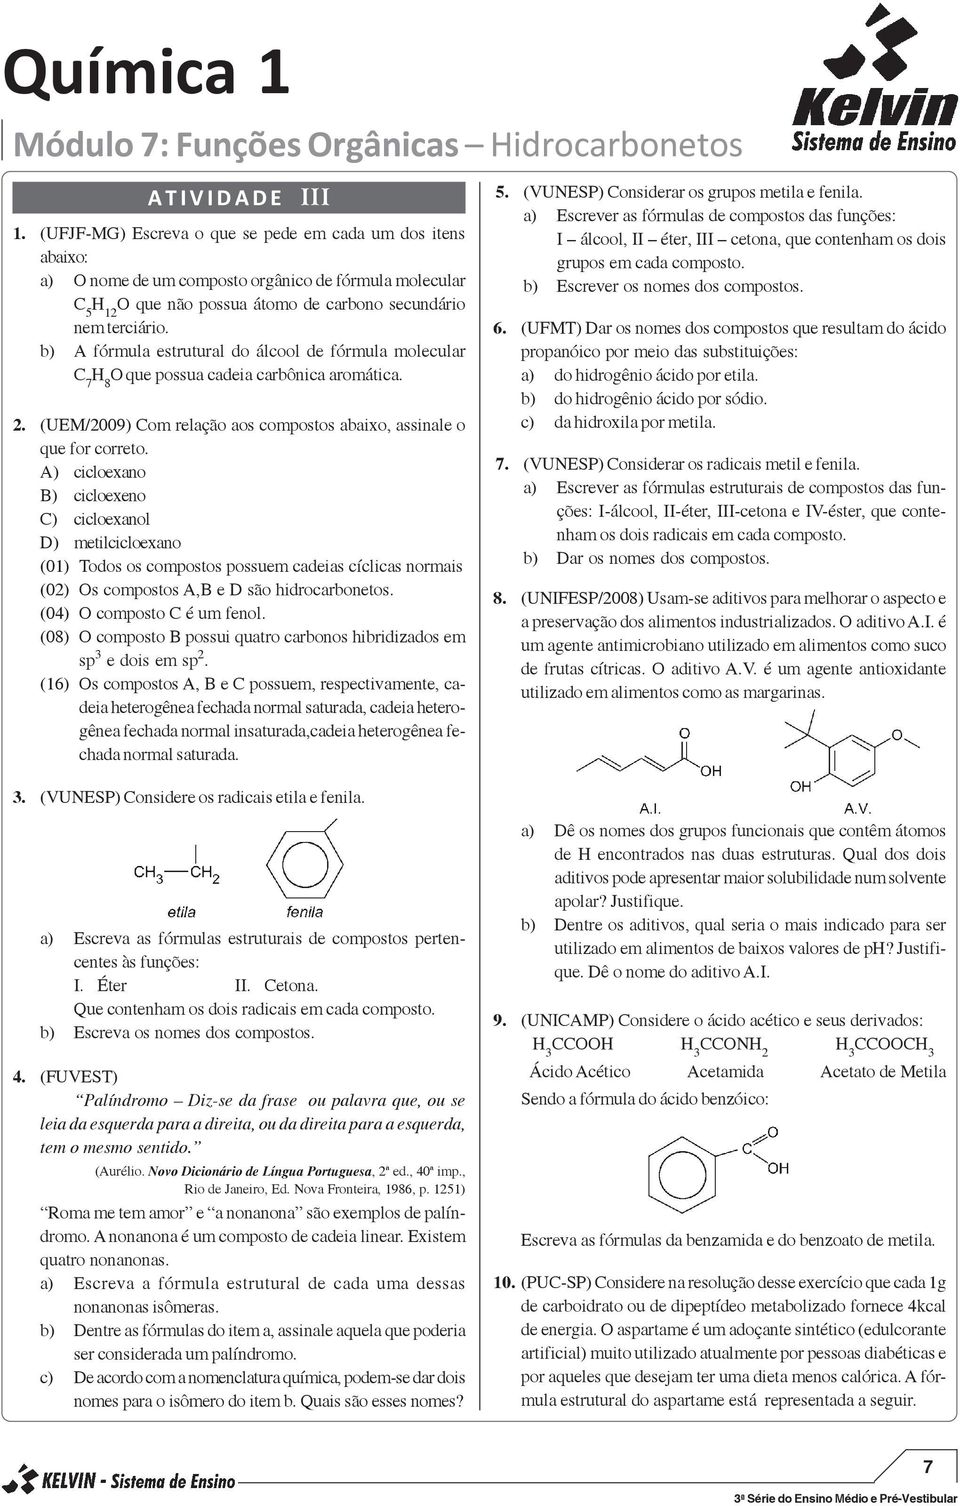 b) A fórmula estrutural do álcool de fórmula molecular C 7 H 8 que possua cadeia carbônica aromática. 2. (UEM/2009) Com relação aos compostos abaixo, assinale o que for correto.